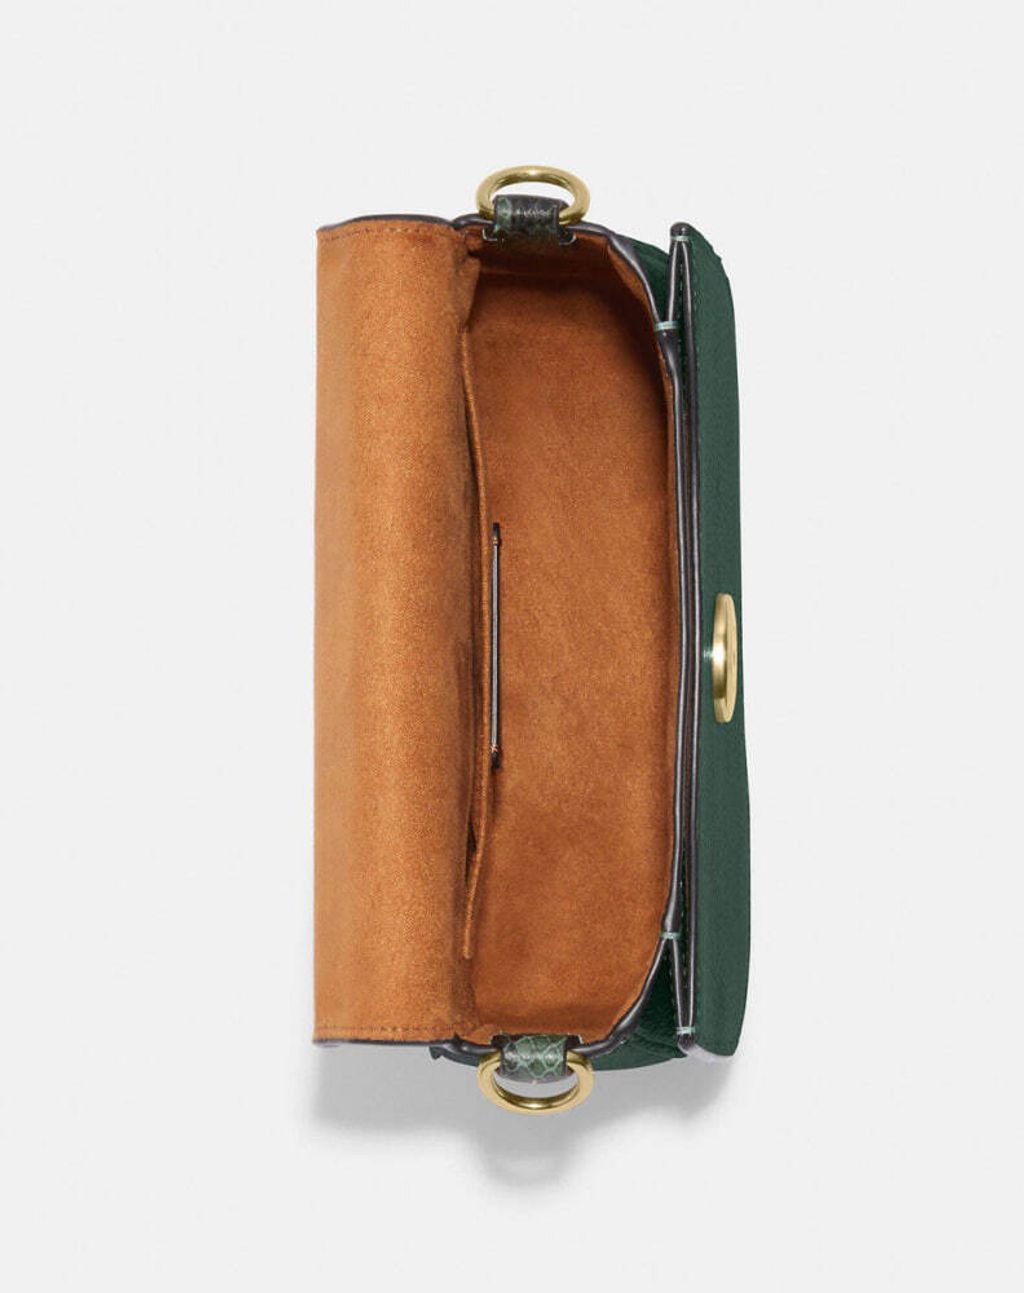 handbag branded coach outlet personalshopper usa malaysia ready stock  COACH MORGAN SADDLE 1